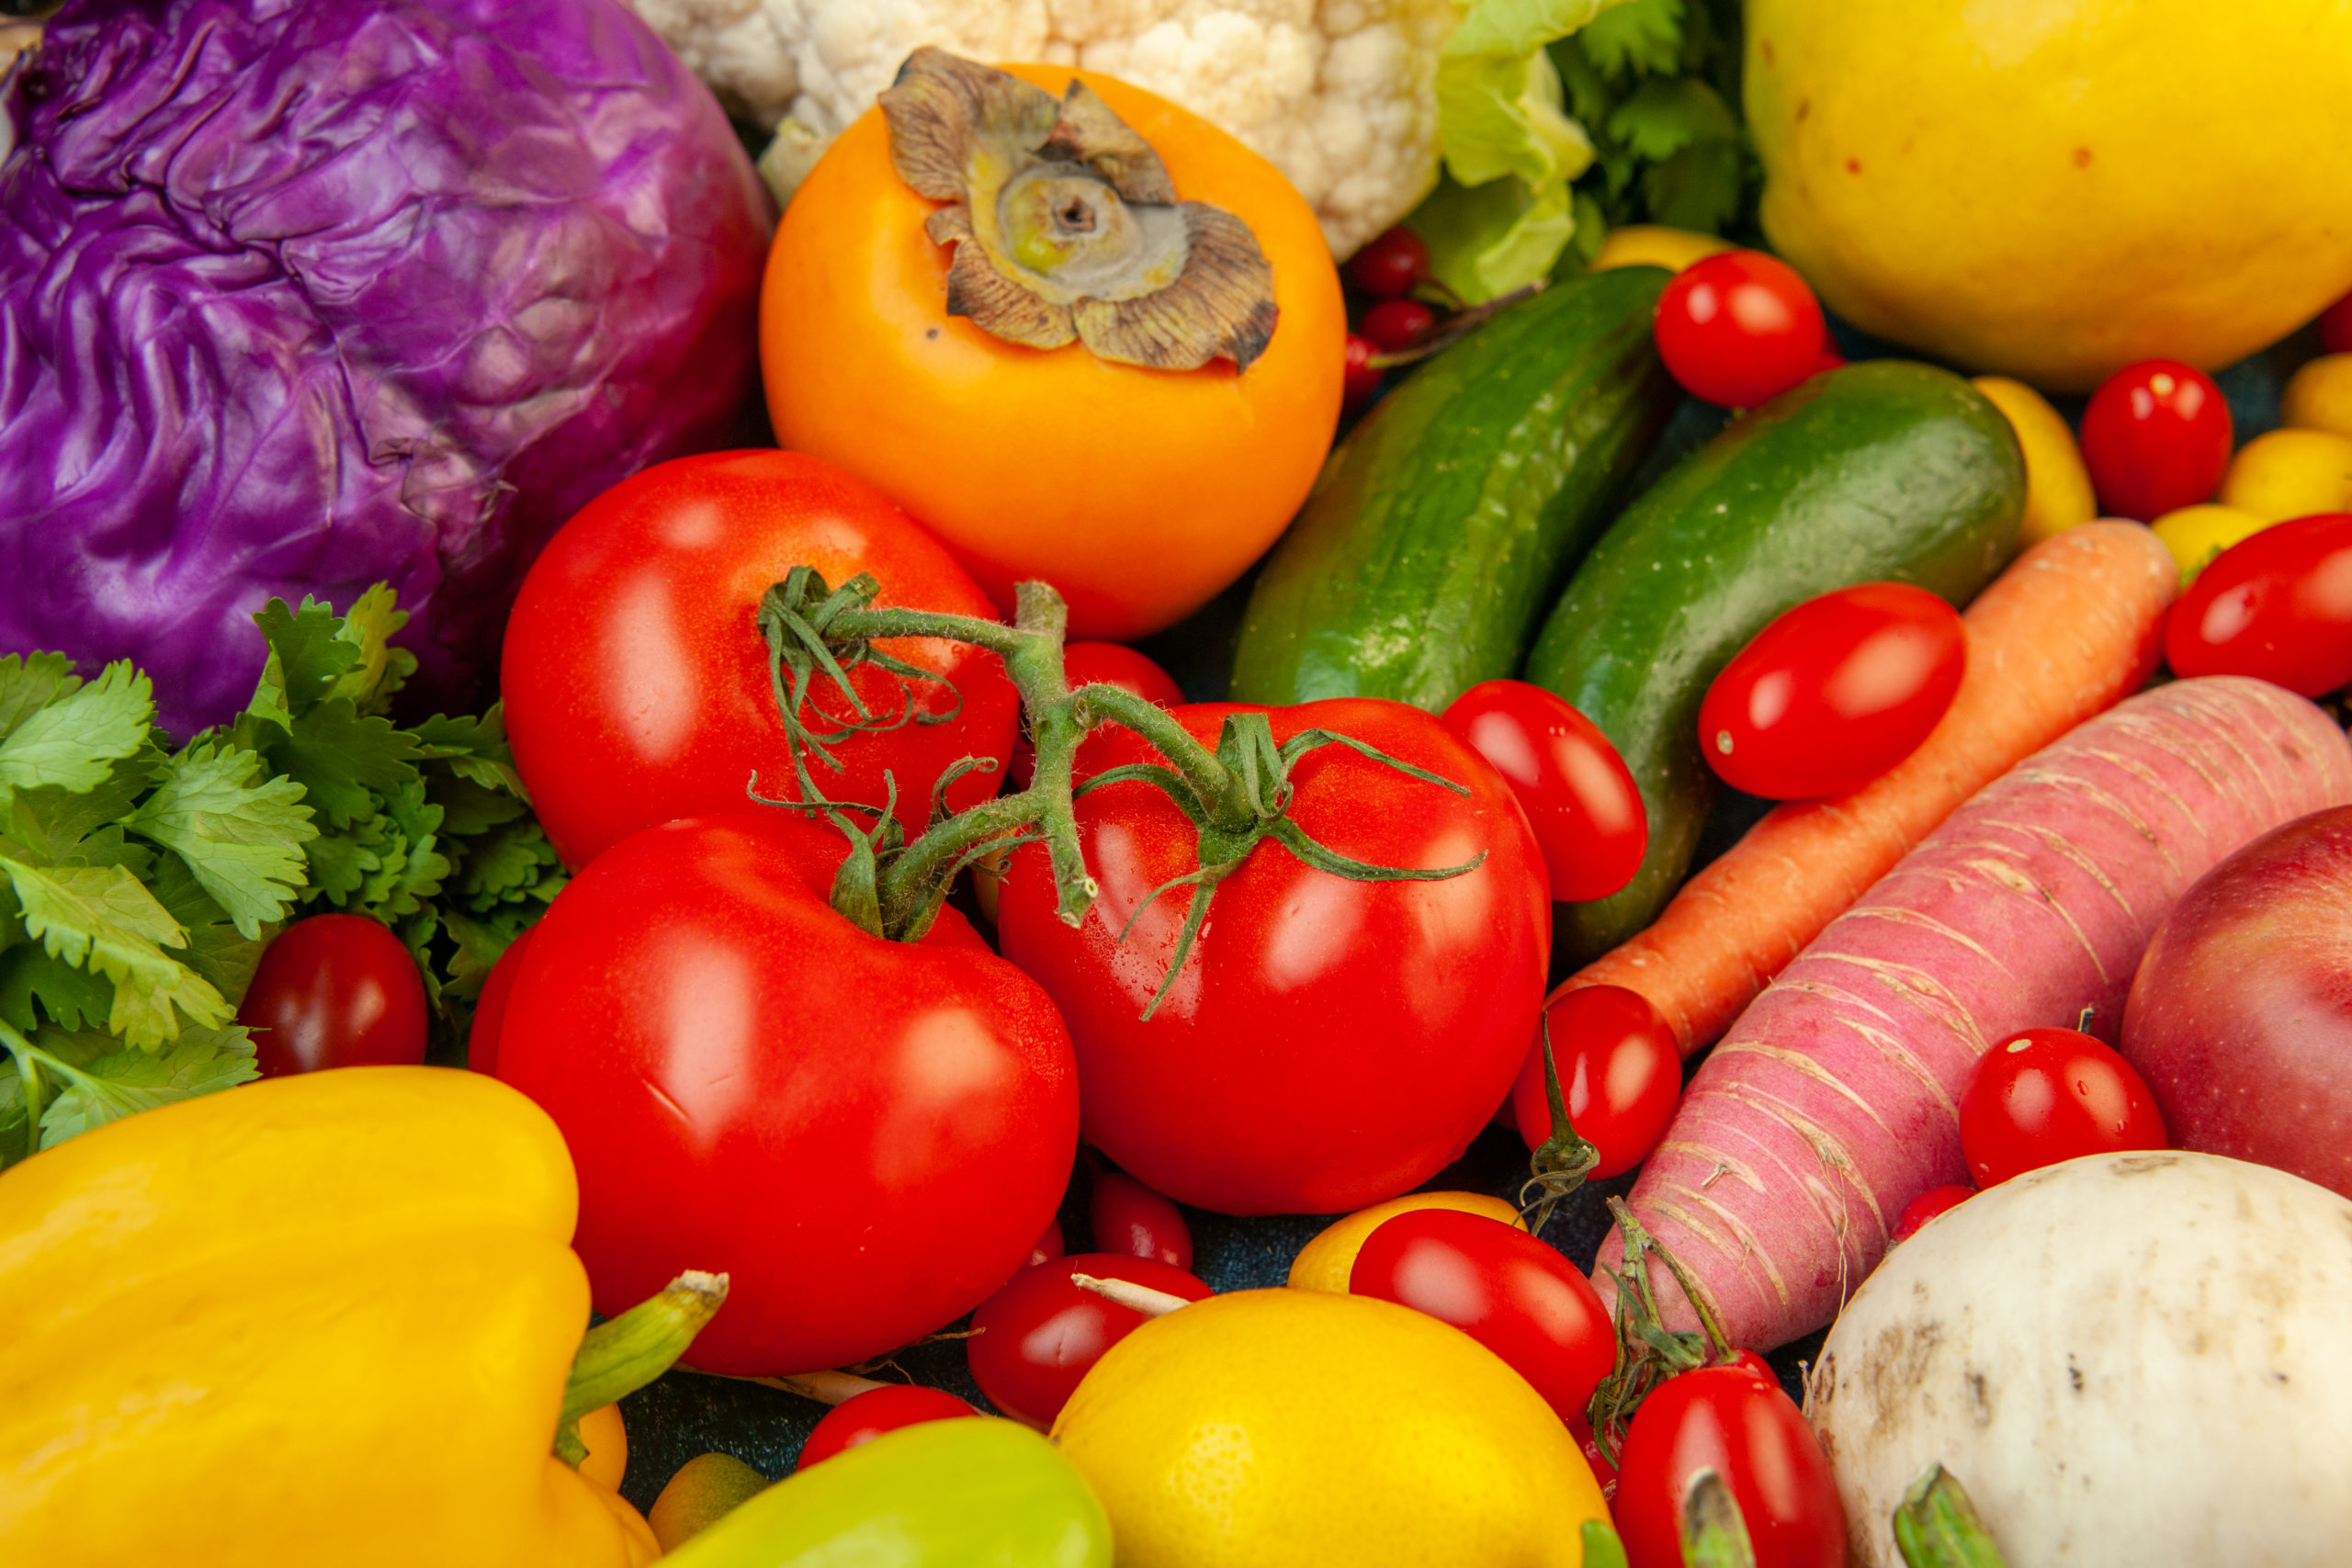 Les prix des légumes ont subi une baisse de 31% depuis le début du mois de Ramadan selon le ministère du Commerce